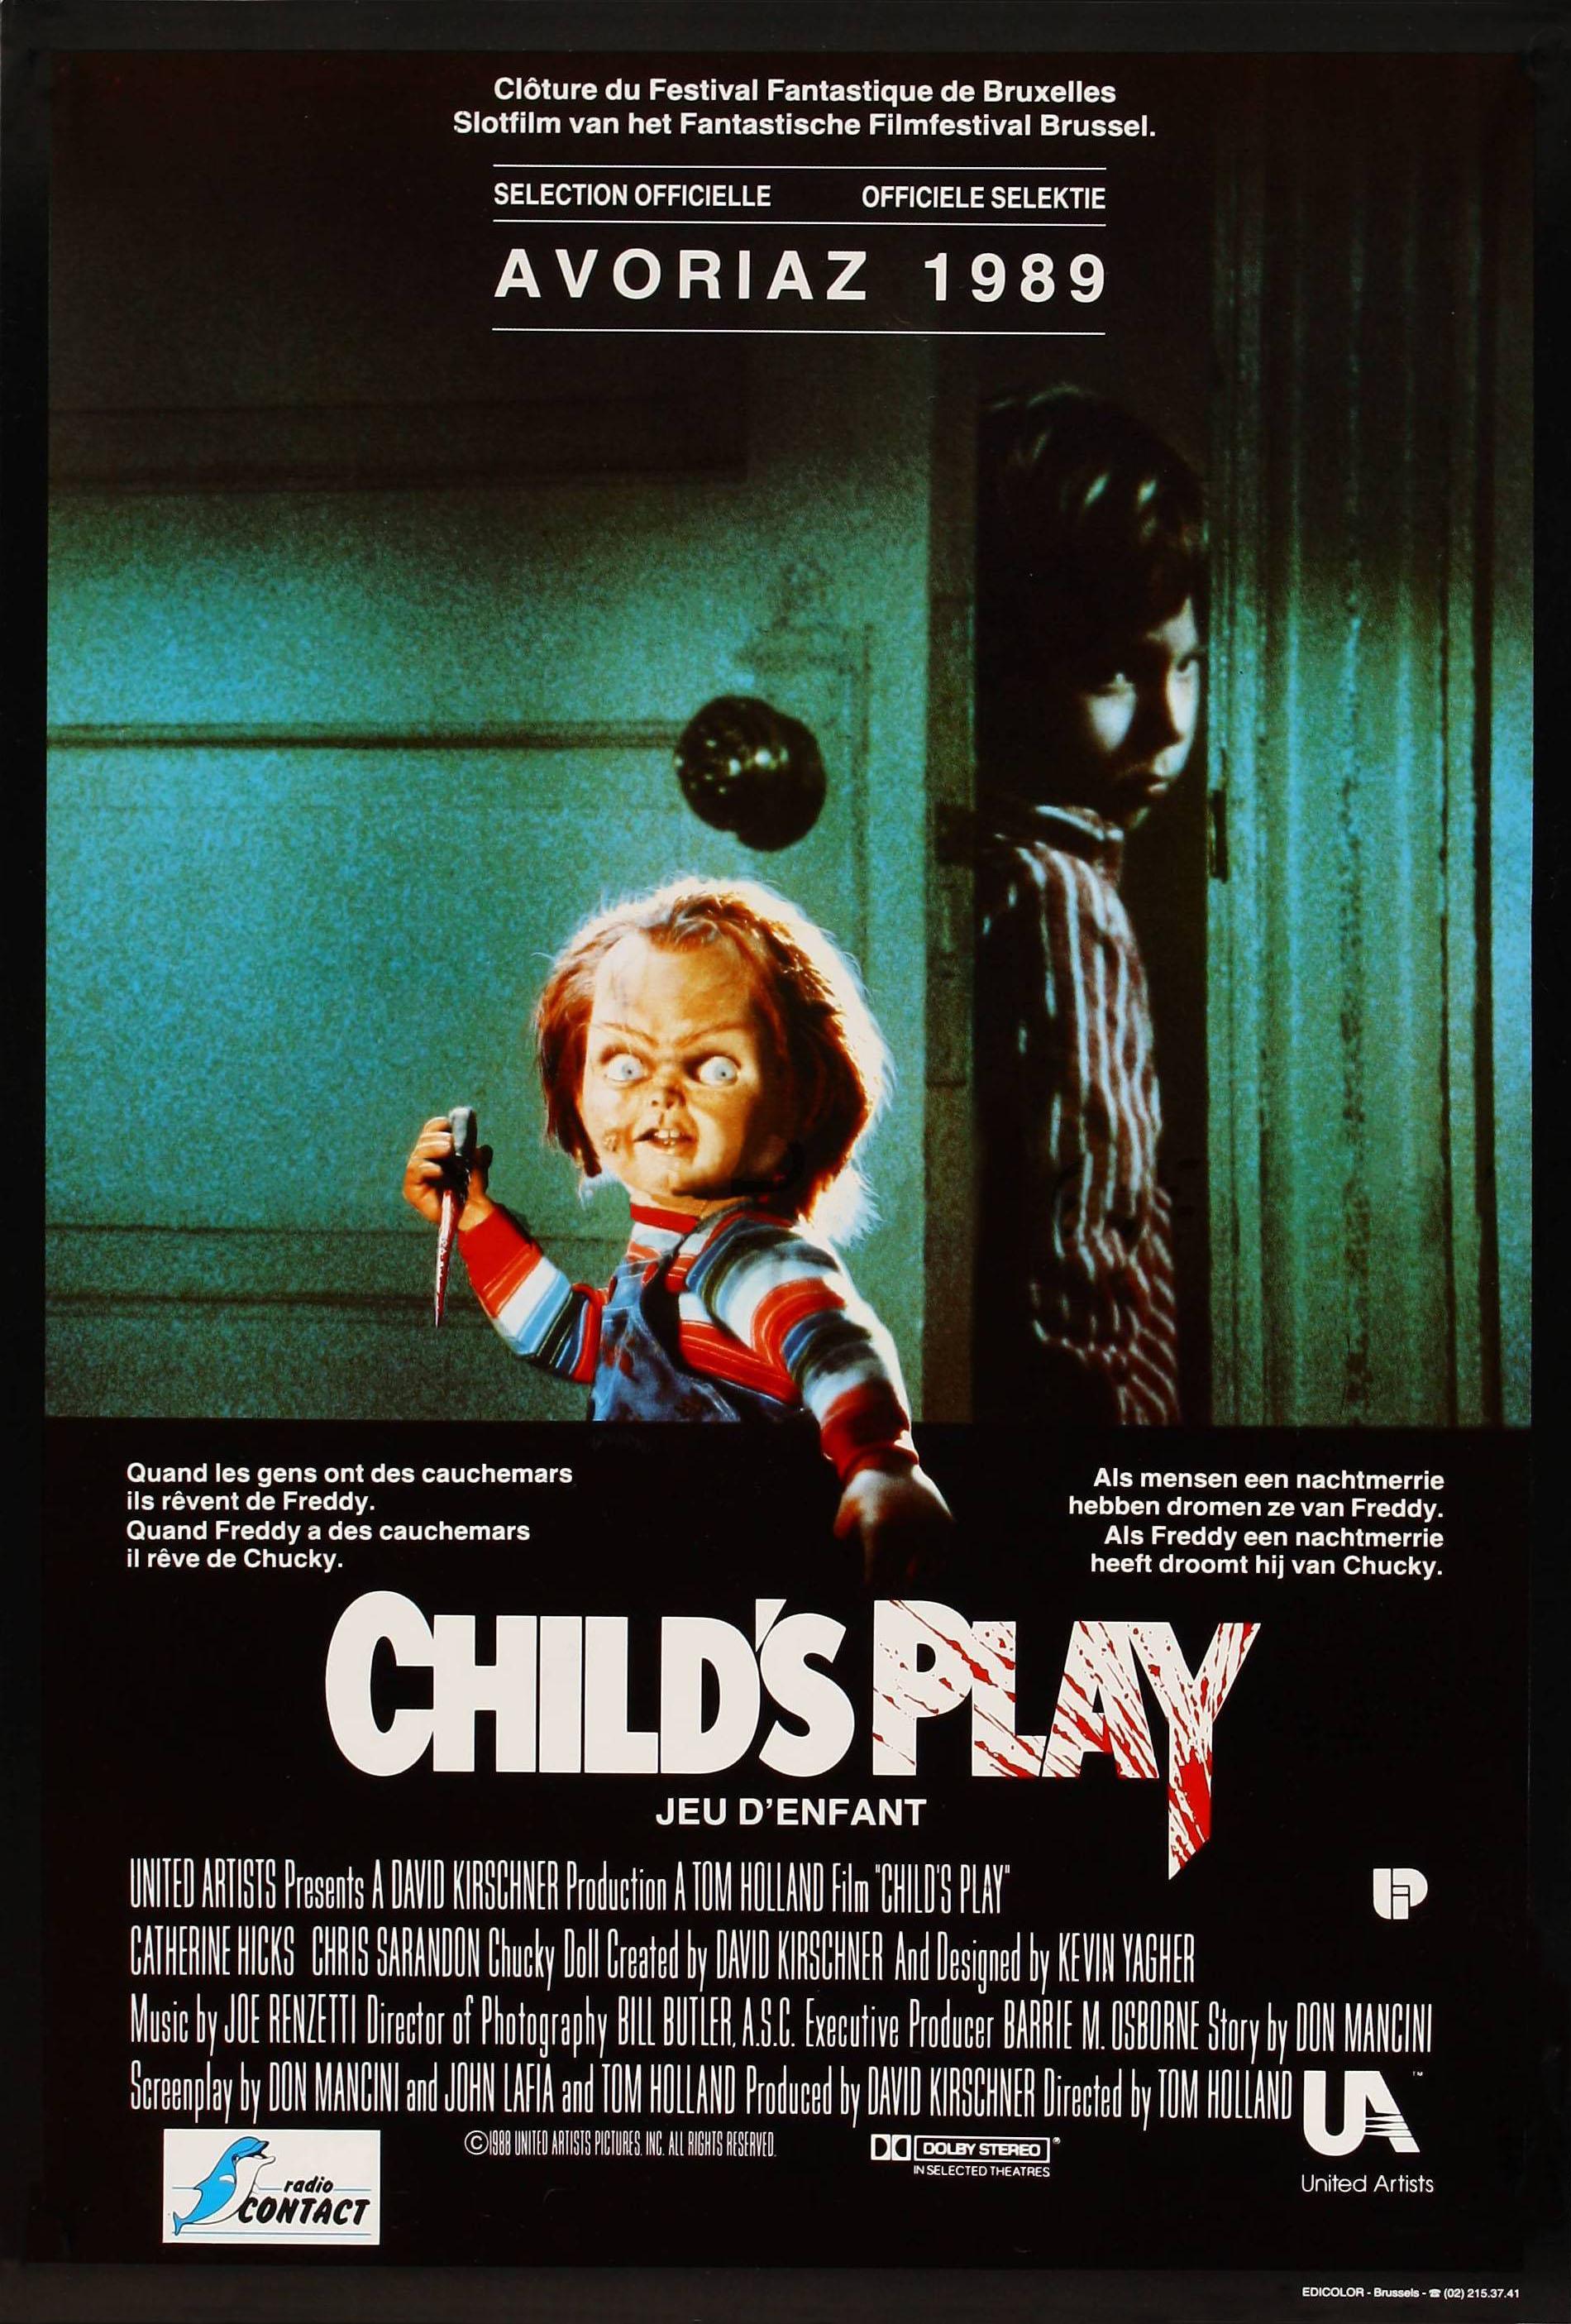 Постер фильма Детские игры | Child's Play